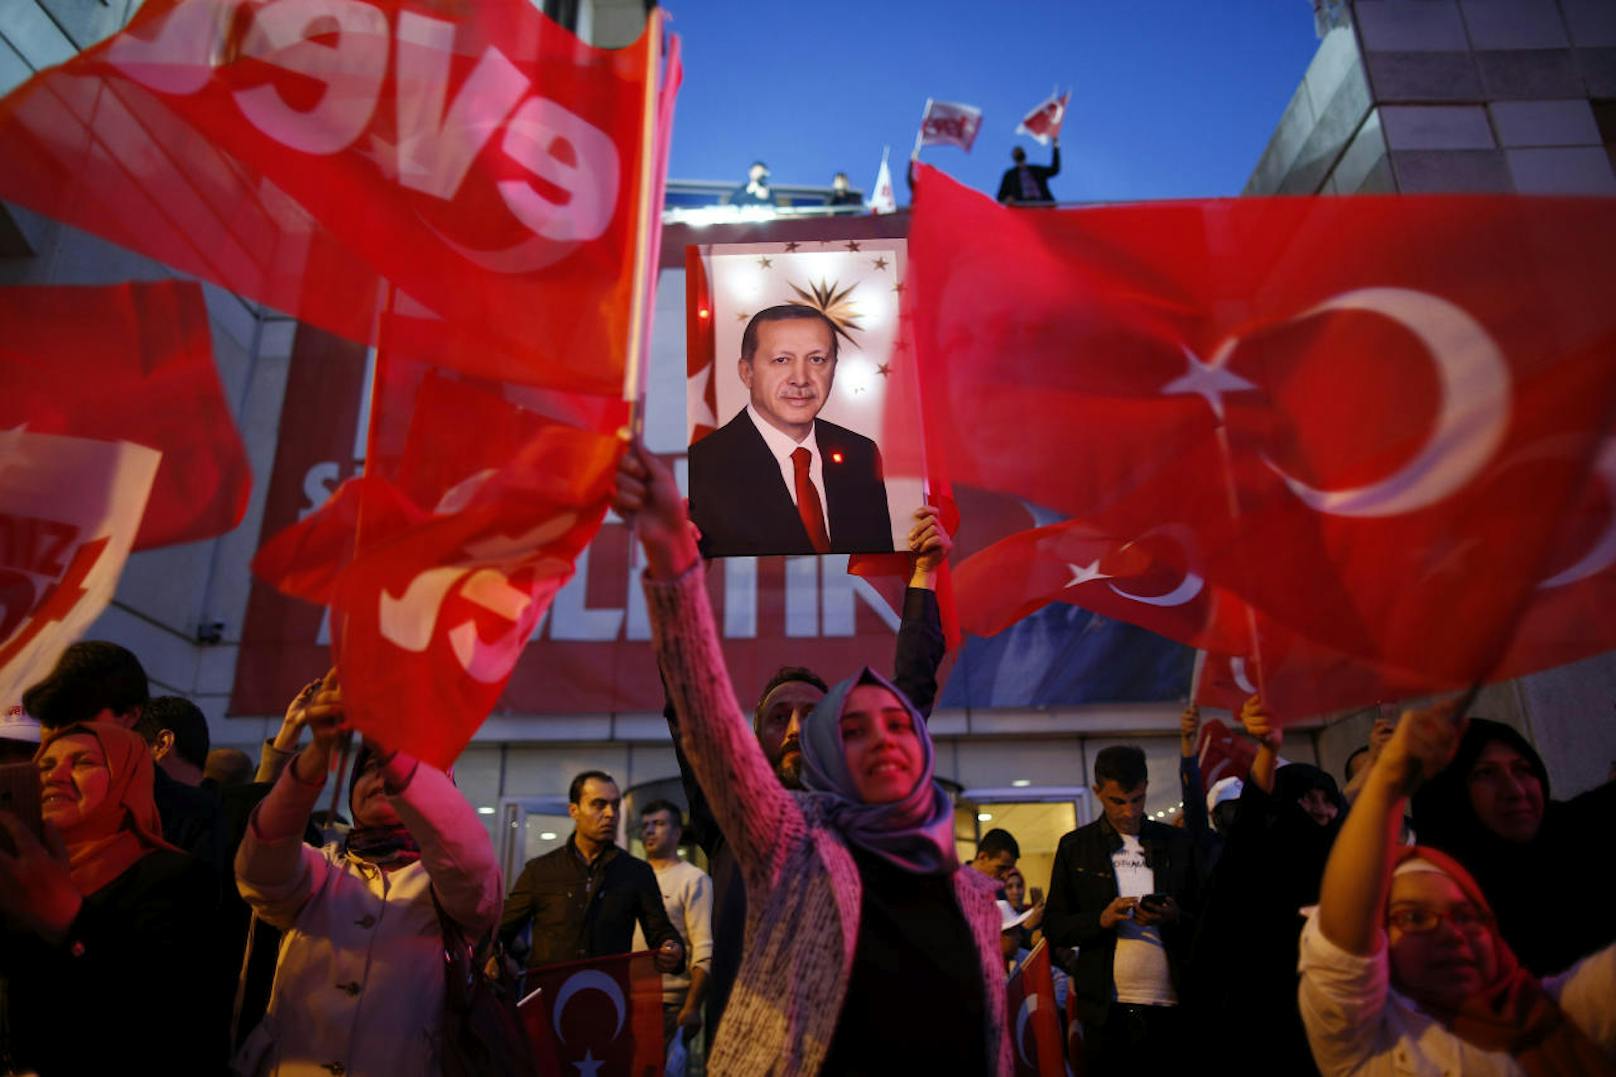 <b>16. April 2017:</b> Der türkische Präsident<b> Recep Tayyip Erdogan</b> konnte sich ein "Ja" zu seinem umstrittenen <b>Verfassungsreferendum</b> über die Einführung eines Präsidialsystems zur Machterweiterung des Staatschefs in der Türkei sichern. Der Abstimmung waren zahlreiche Provokationen türkischer Politiker gegenüber der EU vorausgegangen, die teils skurrile Auswüchse zu Folge hatten. 

<b>Mehr Infos: </b> <a href="https://www.heute.at/welt/news/story/51-35---sagen-Ja--Erdogan-ruft-nach-Todesstrafe-52117138" target="_blank">51,35 % sagen Ja, Erdogan ruft nach Todesstrafe</a>